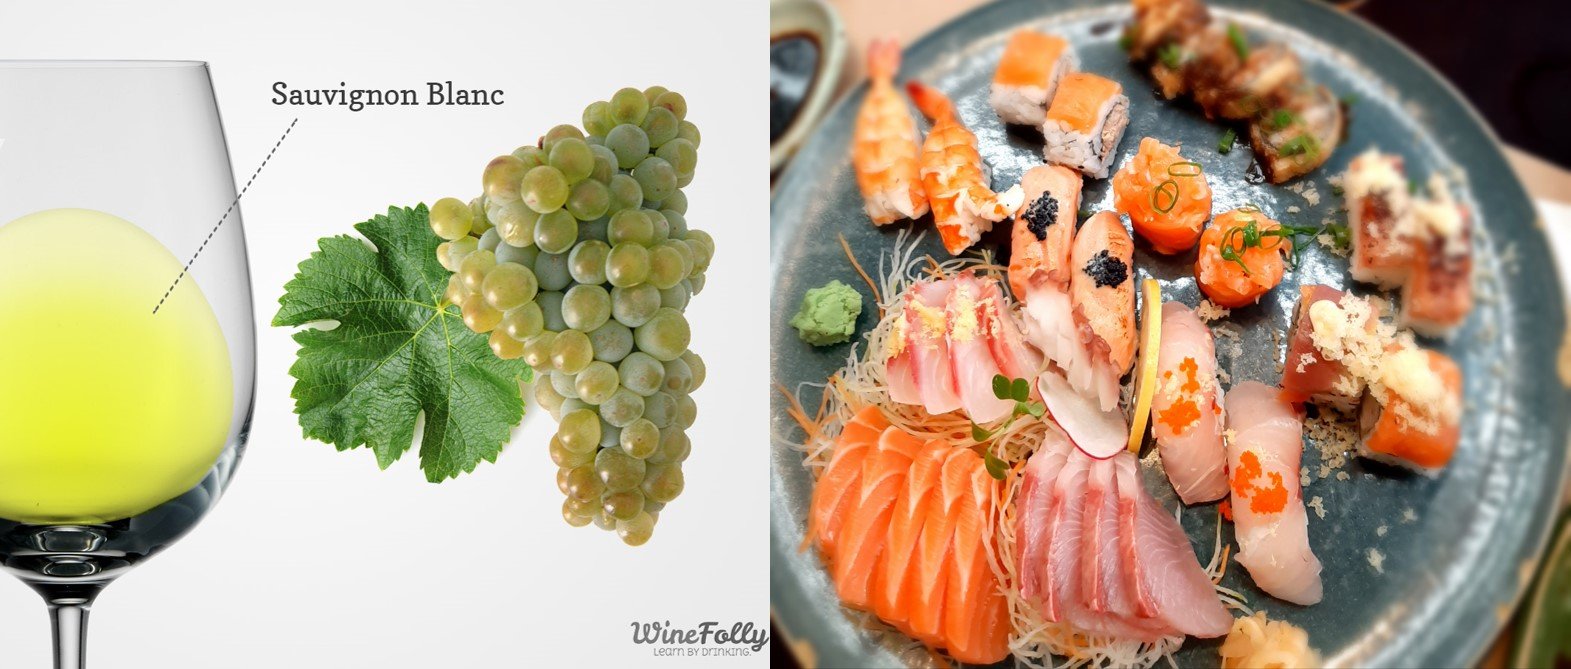 Taça de vinho branco e cacho da uva sauvignon blanc com um prato de sushi e sashimi como sugestão de harmonização